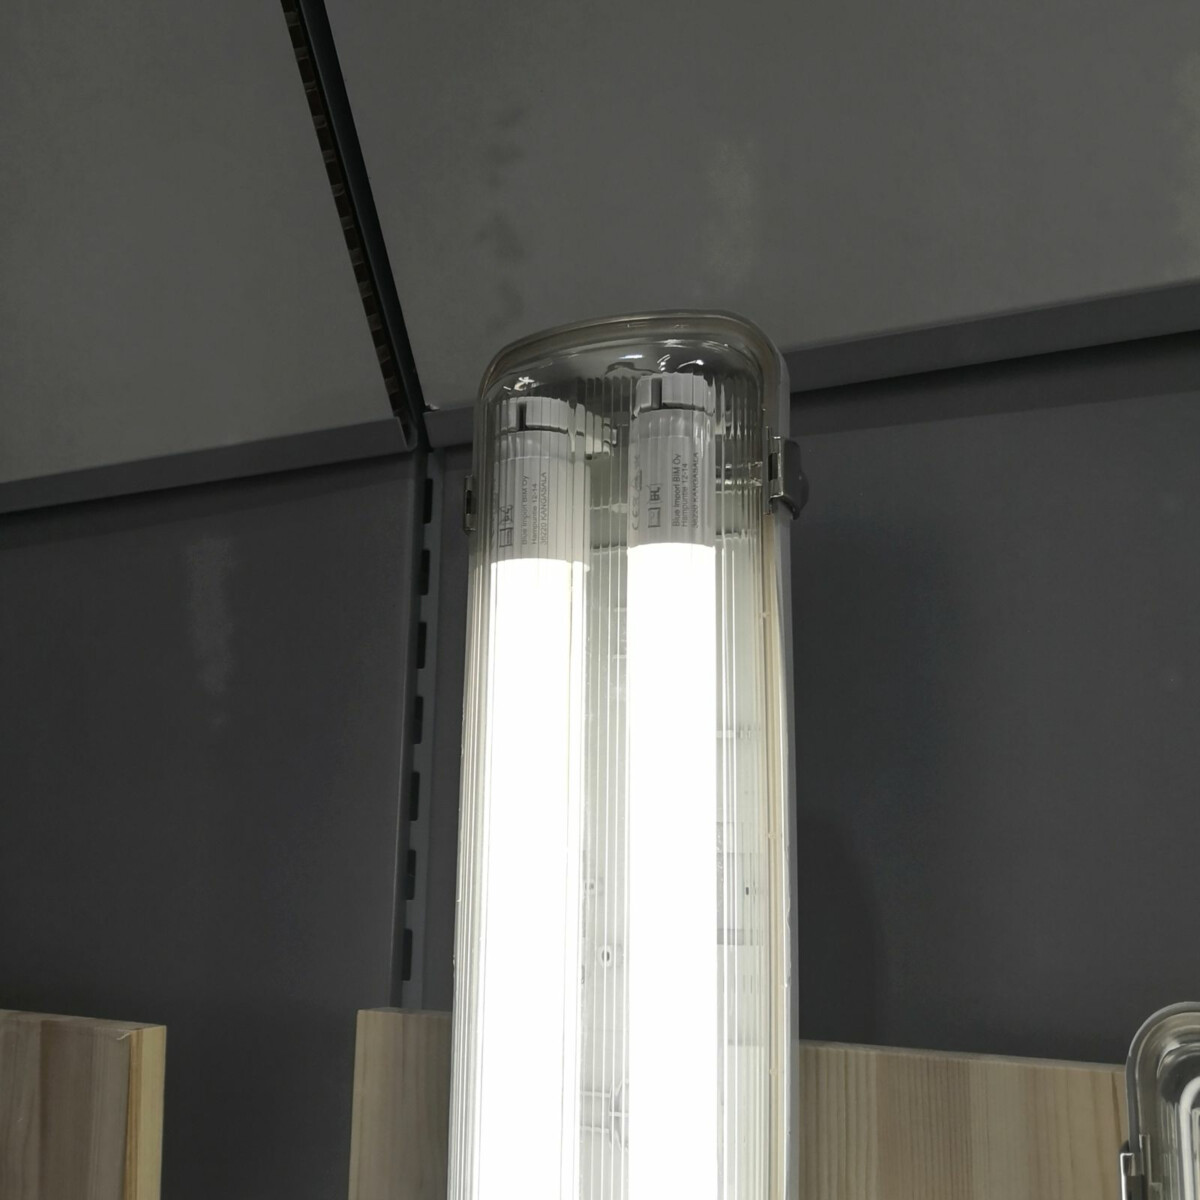 Tavallisen loisteputken tilalle energiatehokas LED-loisteputki - SuperLEDin valikoimista löydät kotiin tai teollisuuden tarpeisiin sopivan